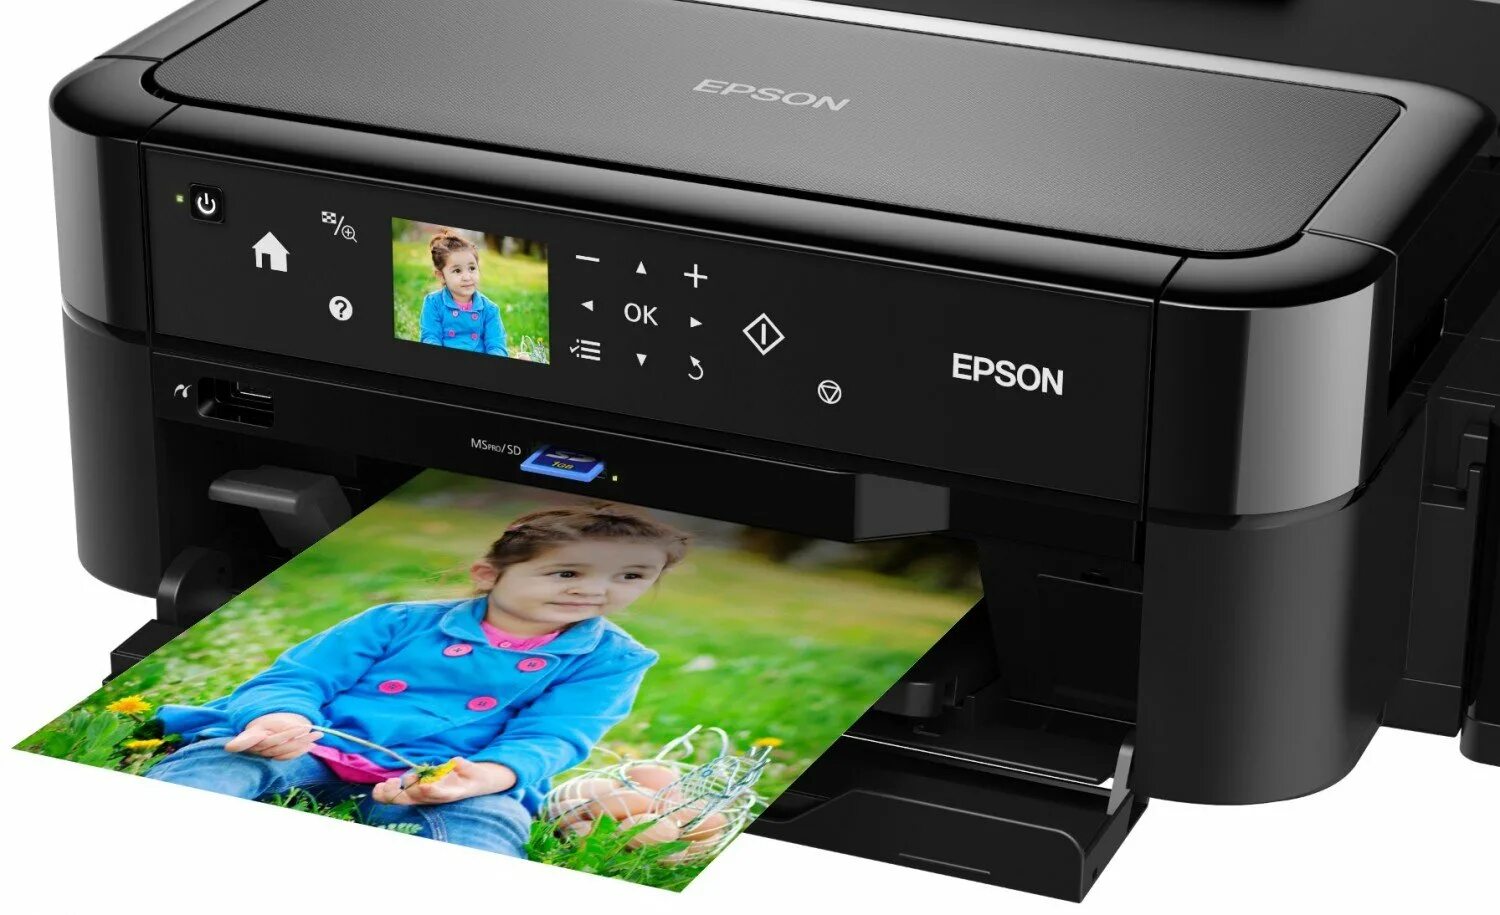 Принтер максимальное разрешение. Принтер струйный Epson l810. Принтеры Эпсон 810. Epson 810 принтер цветной. Epson принтер Epson l810.